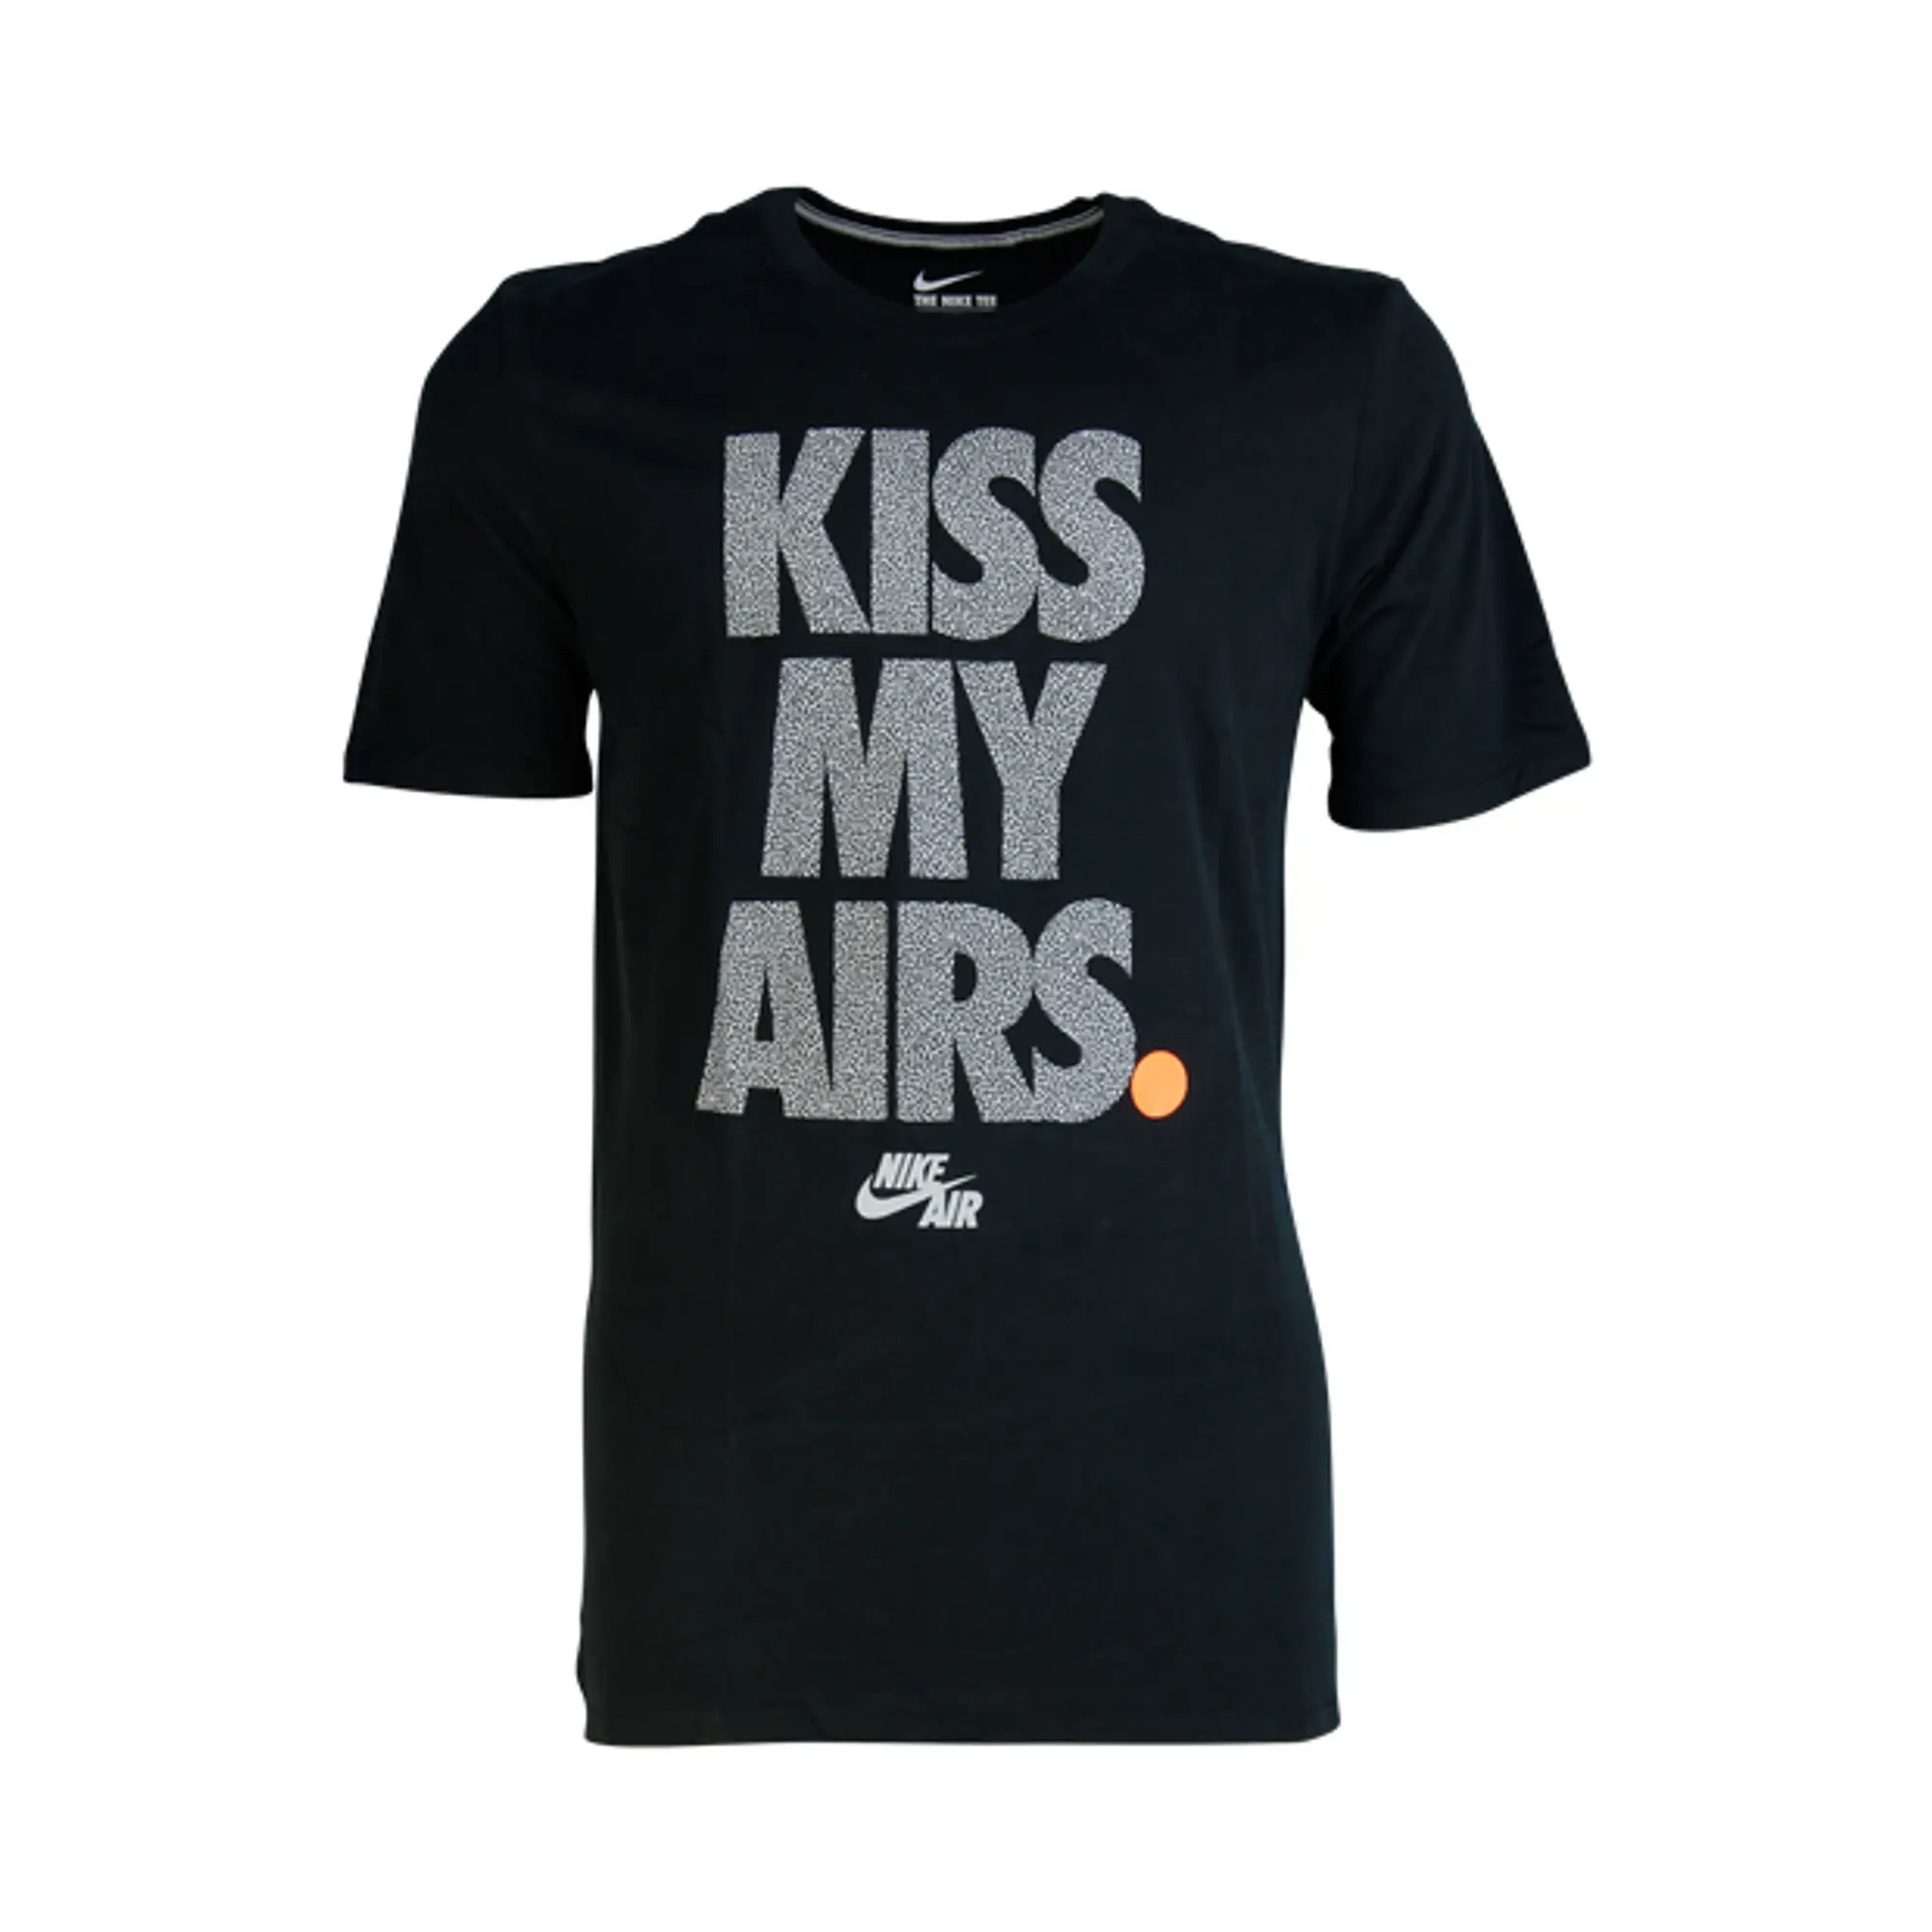 Nike Air Kiss My Airs Tee - Black